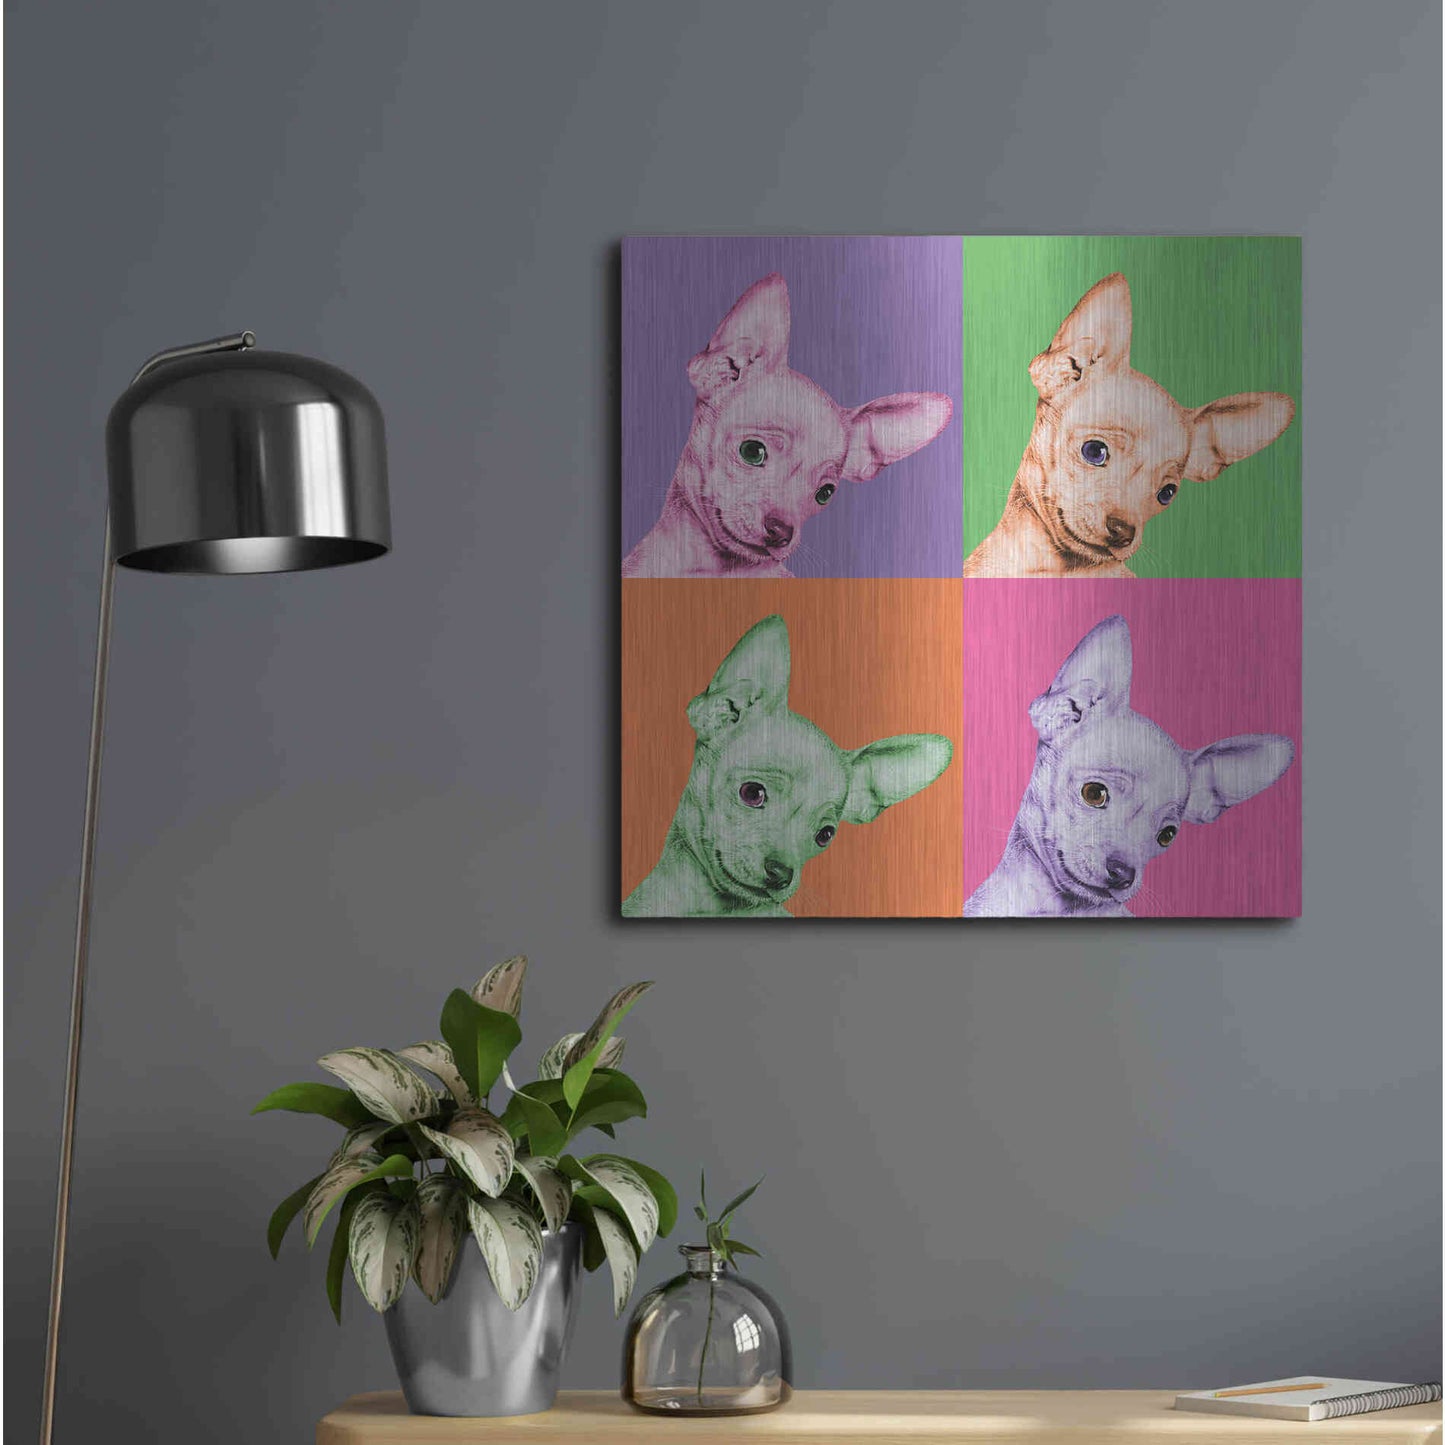 Luxe Metal Art 'Sweet Chihuahua Pop' by Jon Bertelli Metal Wall Art,24x24